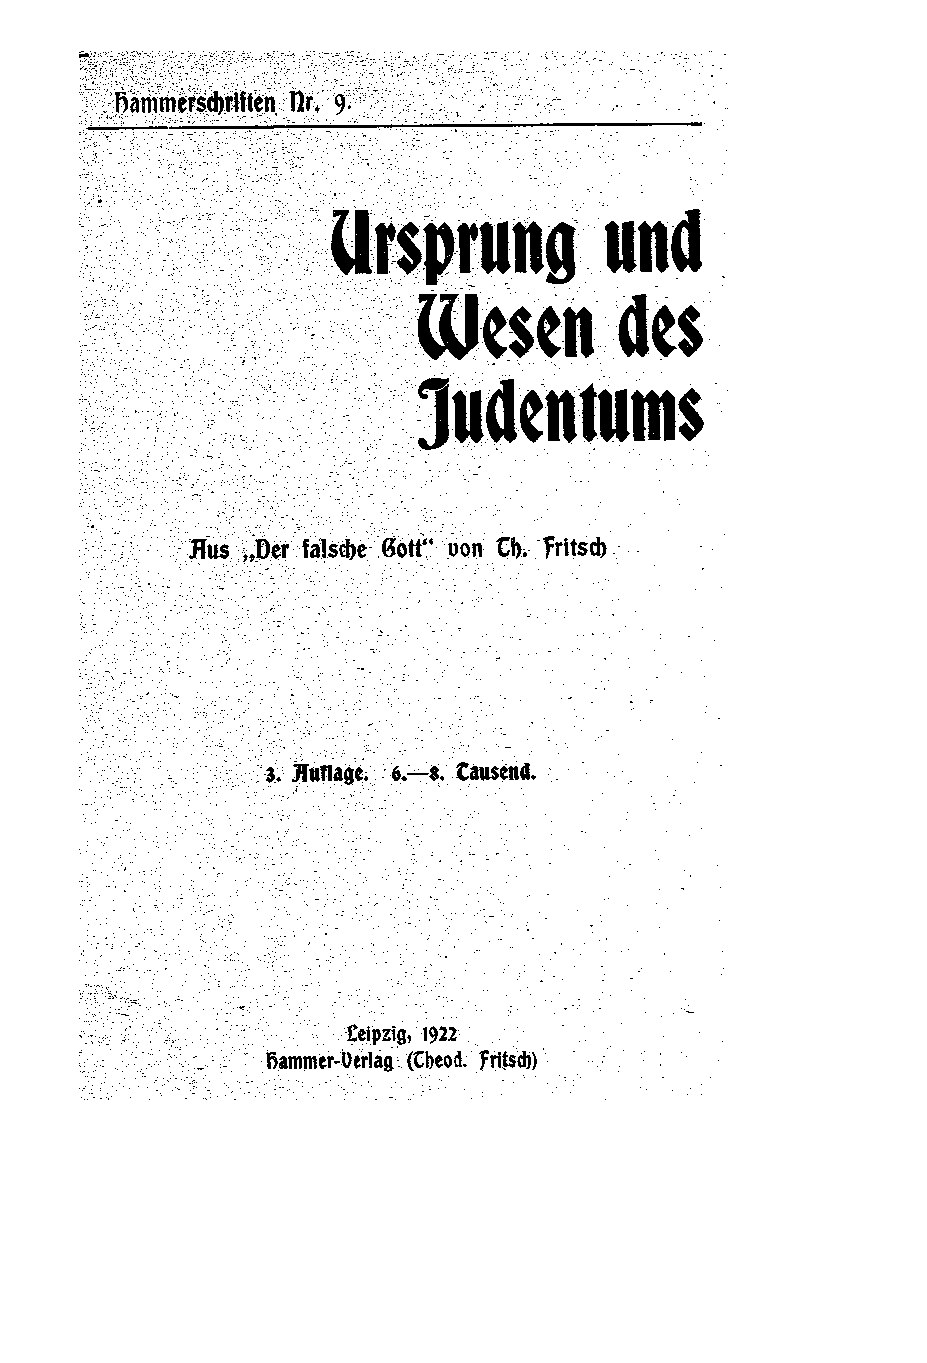 Hammerschriften Nr. 9 - Ursprung und Wesen des Judentums (1922, 26 S., Scan, Fraktur)